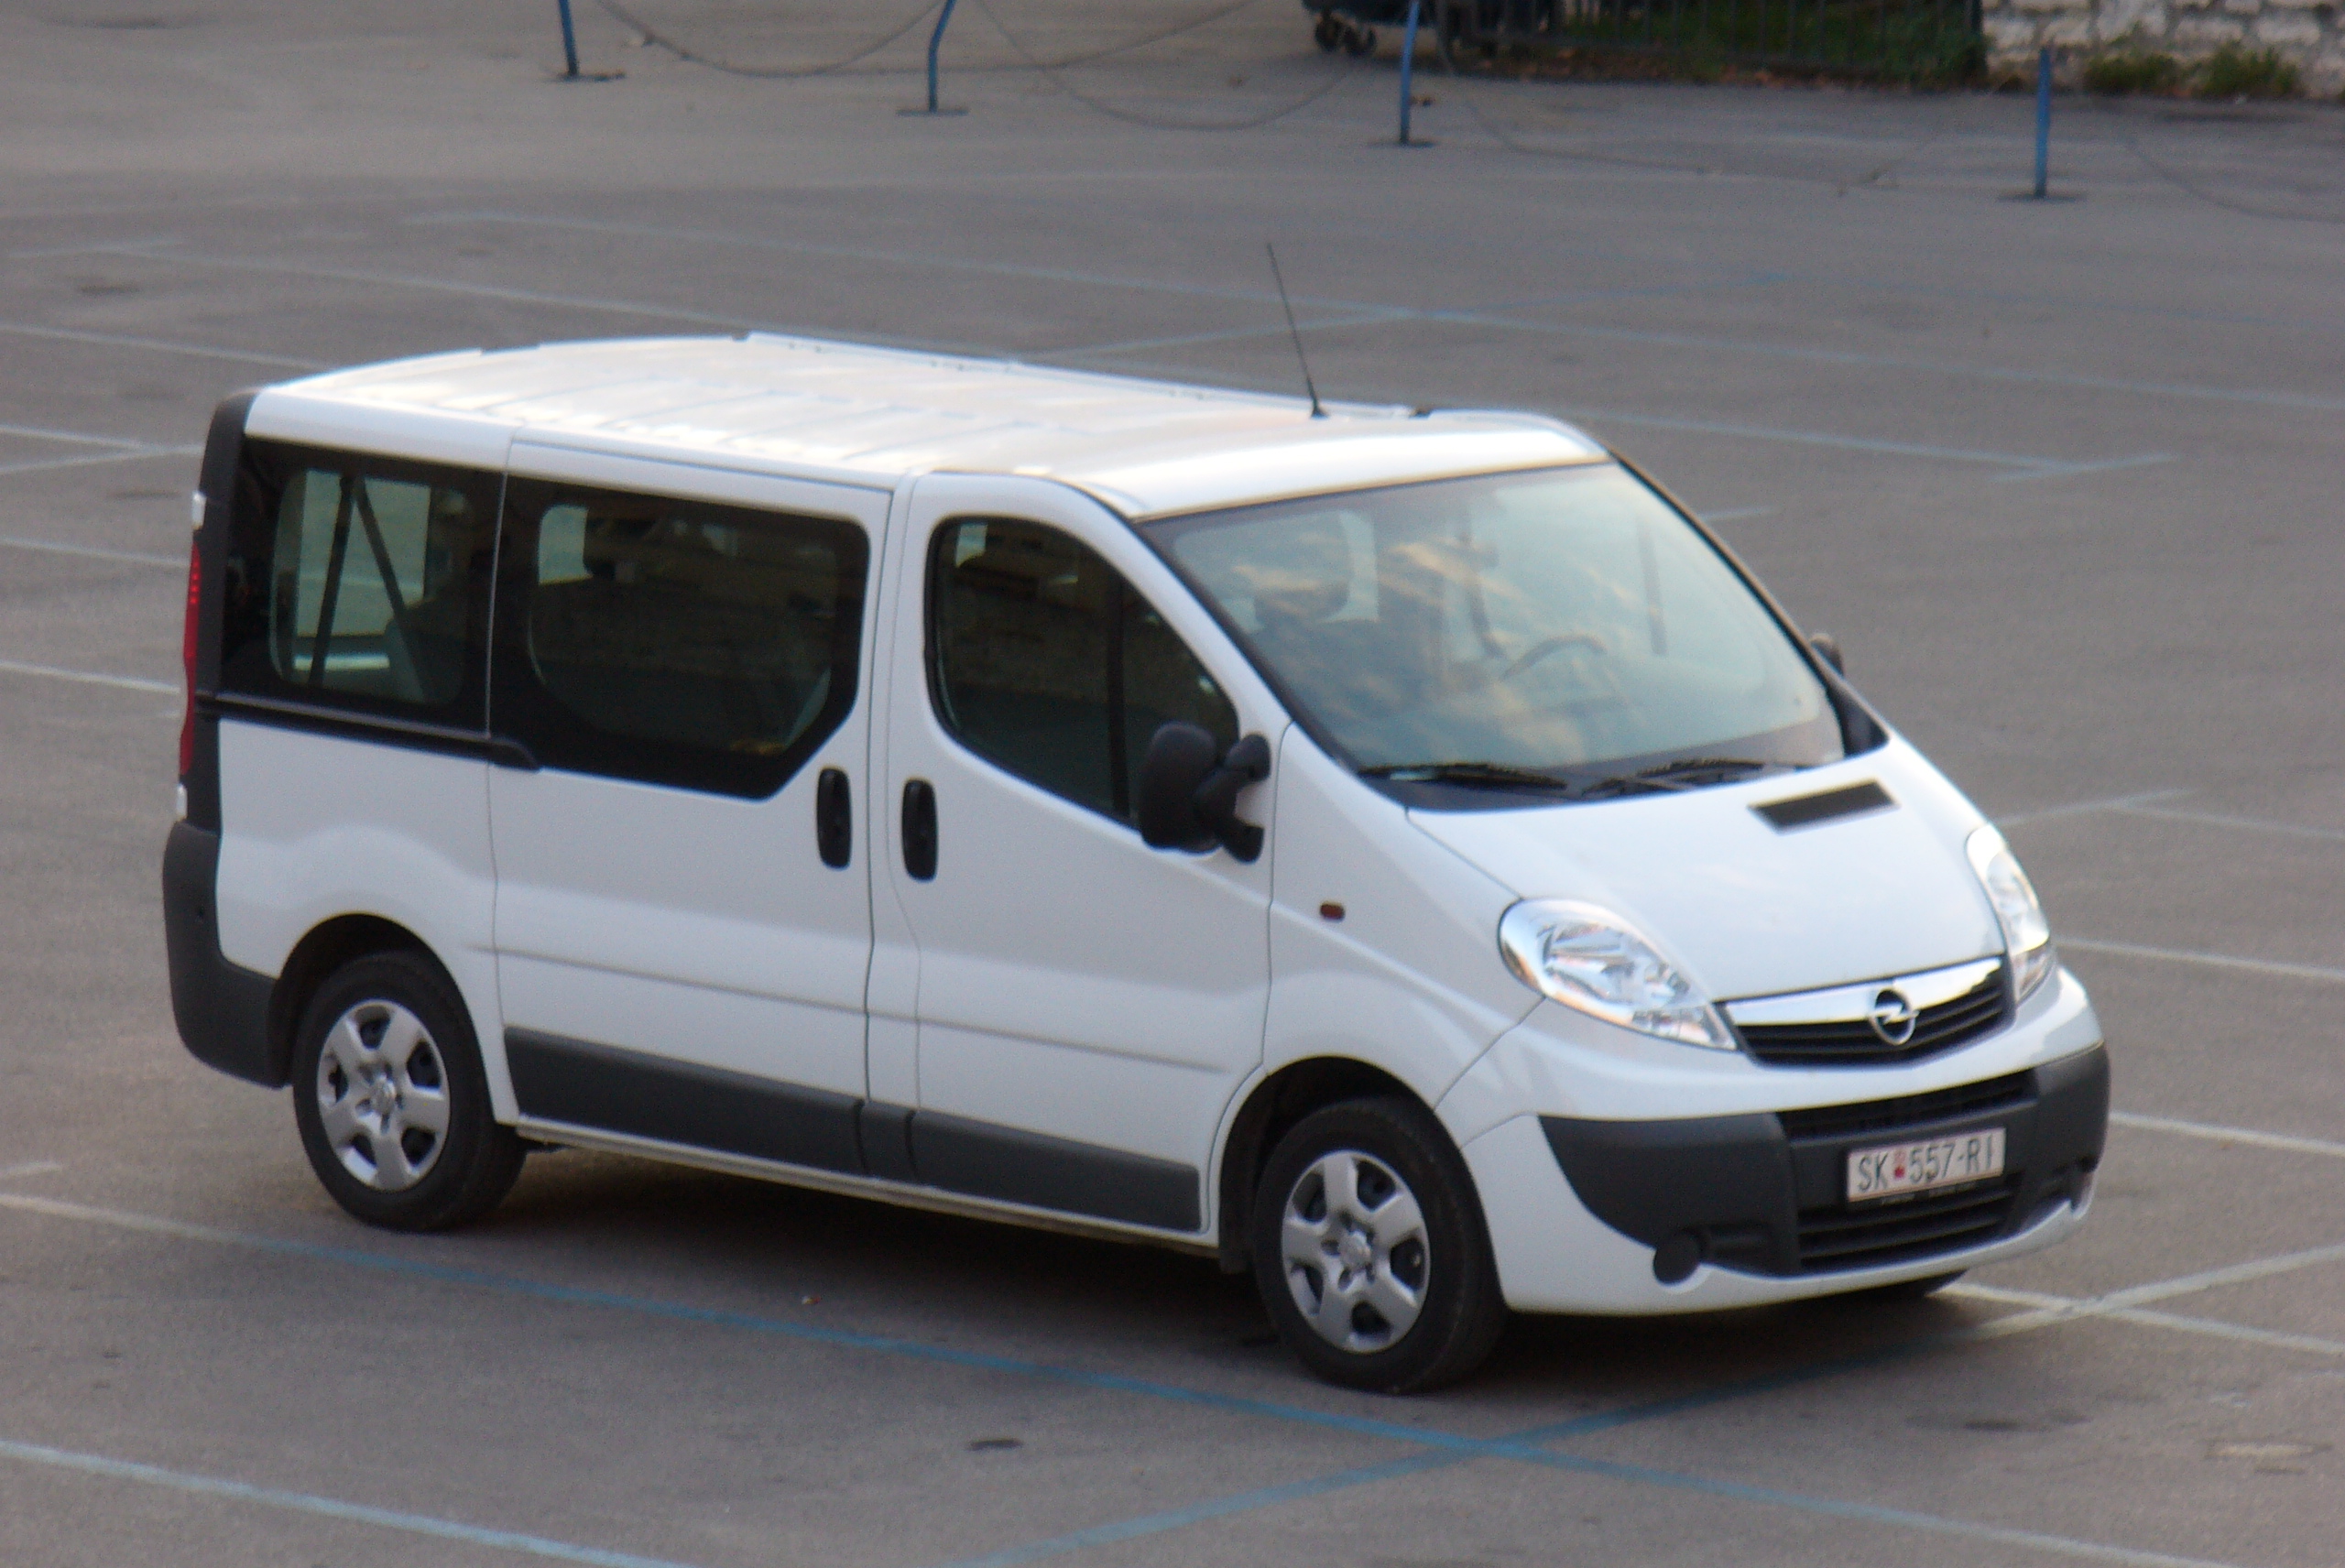 File:Opel-vivaro-2006.JPG